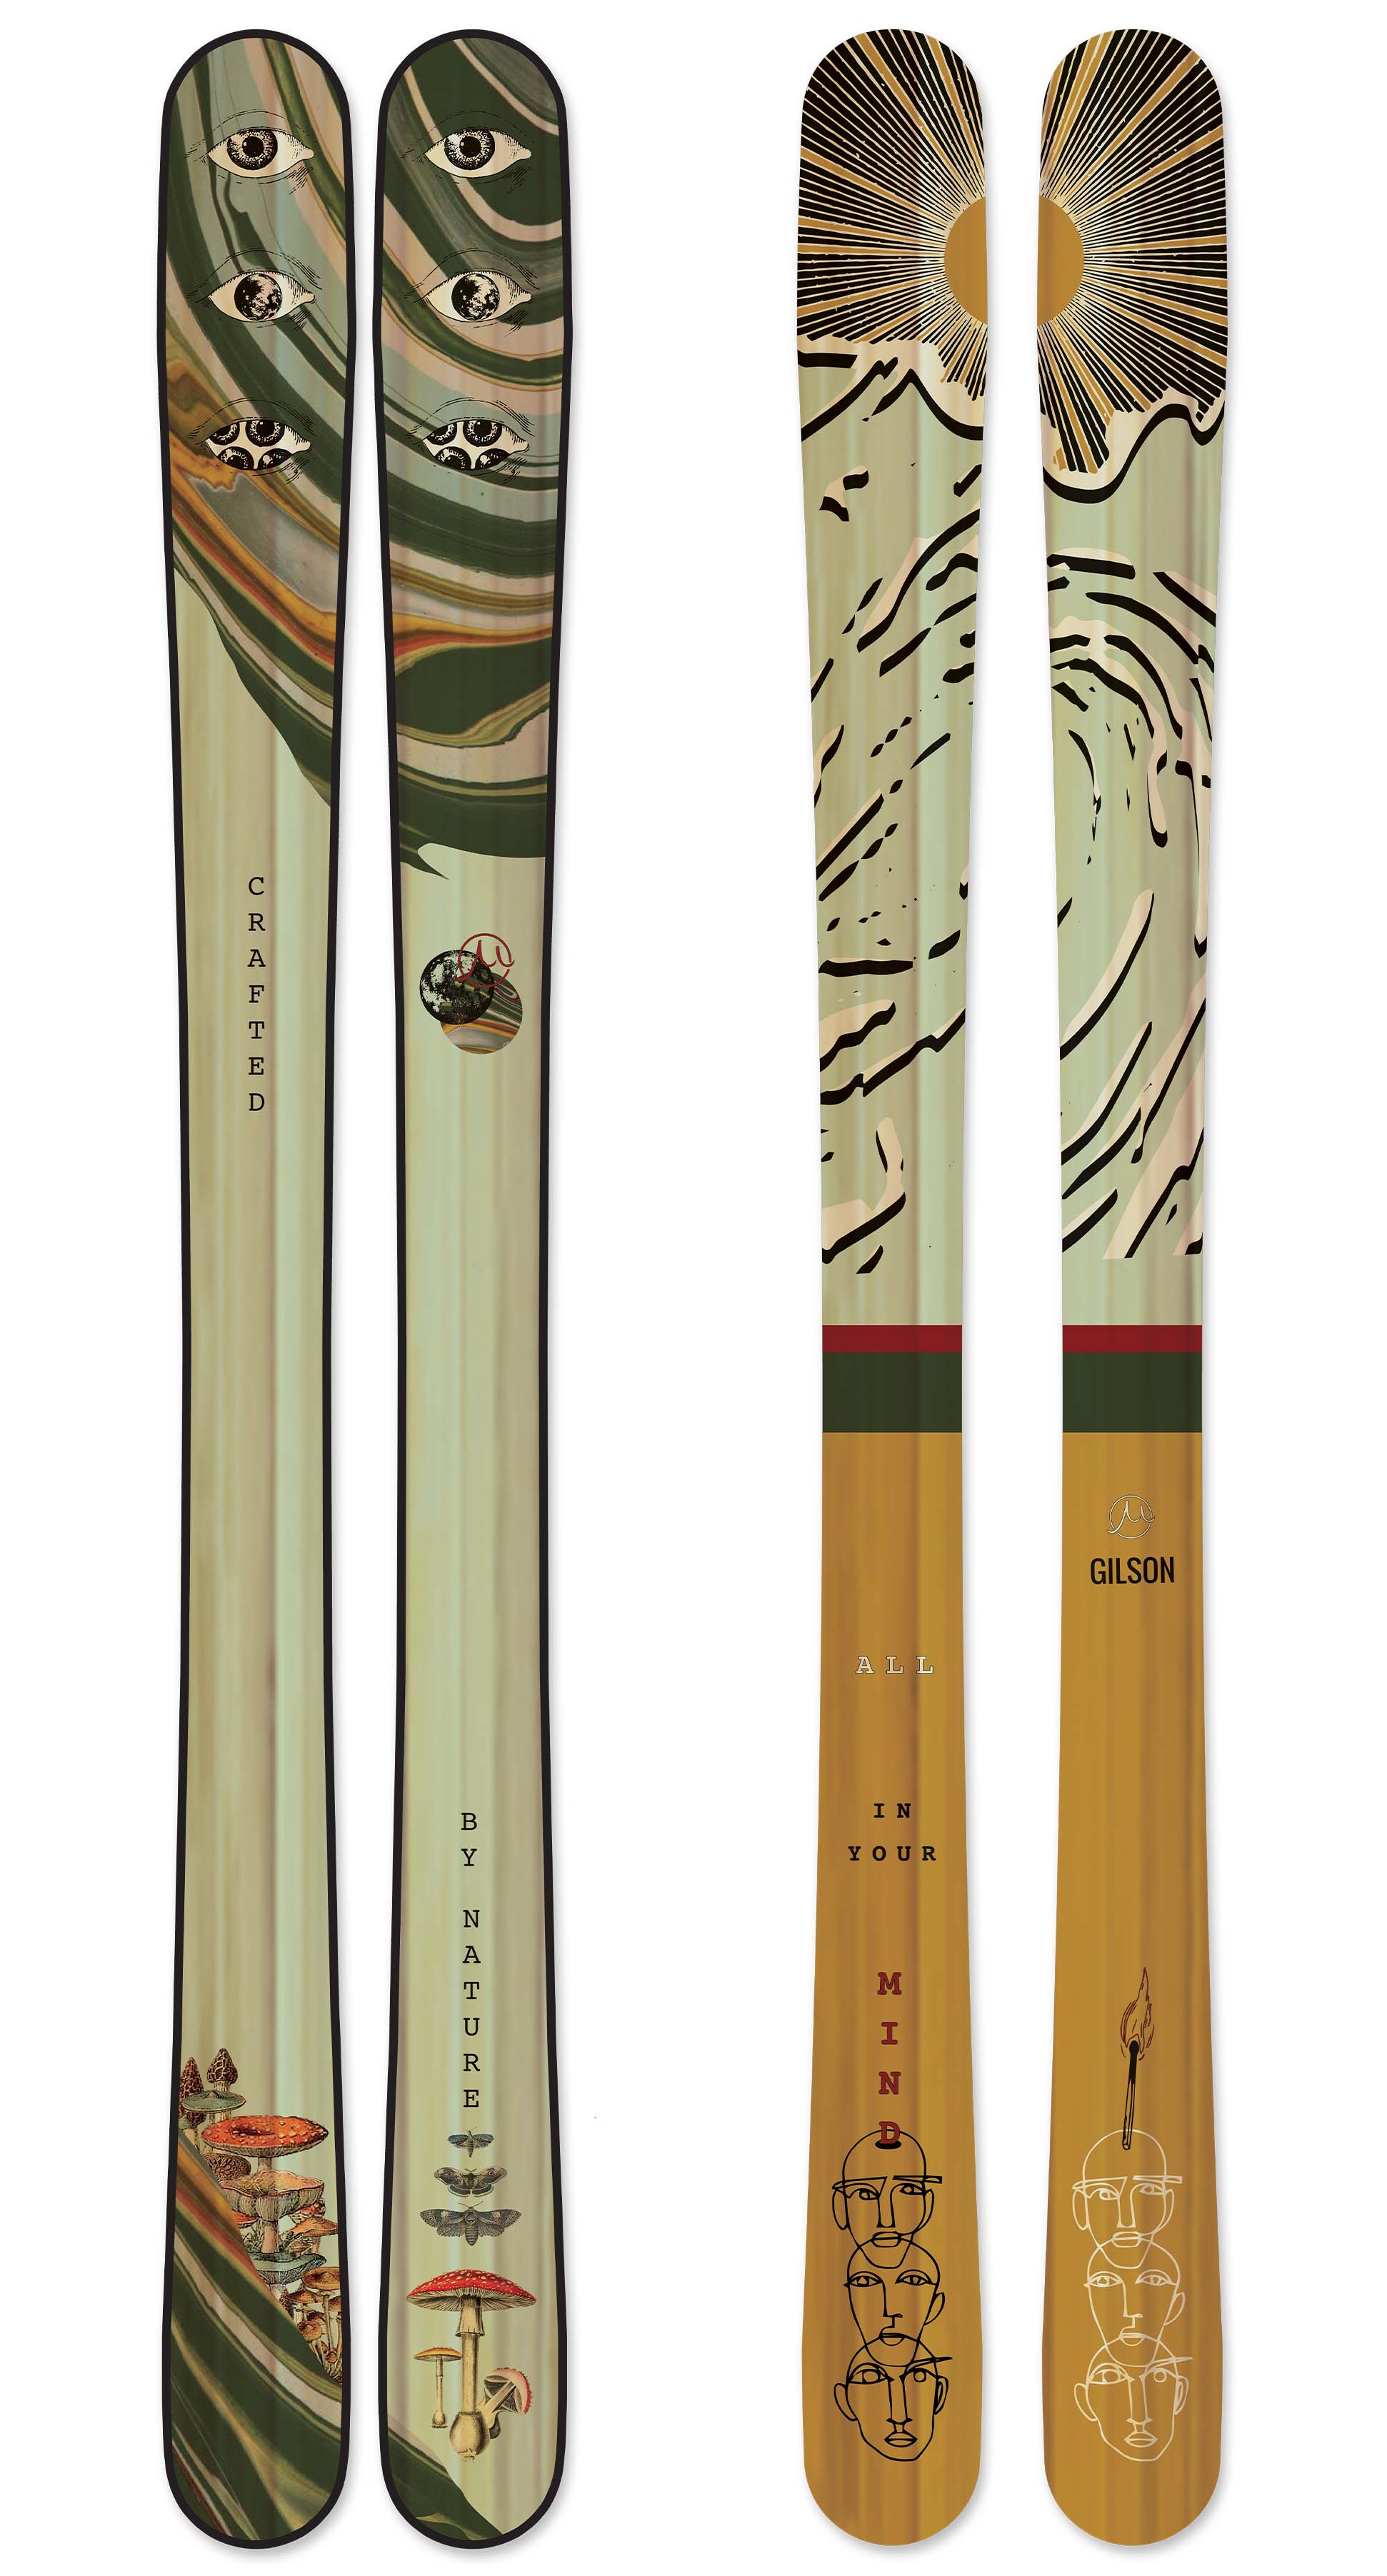 Sasha reborn skis large